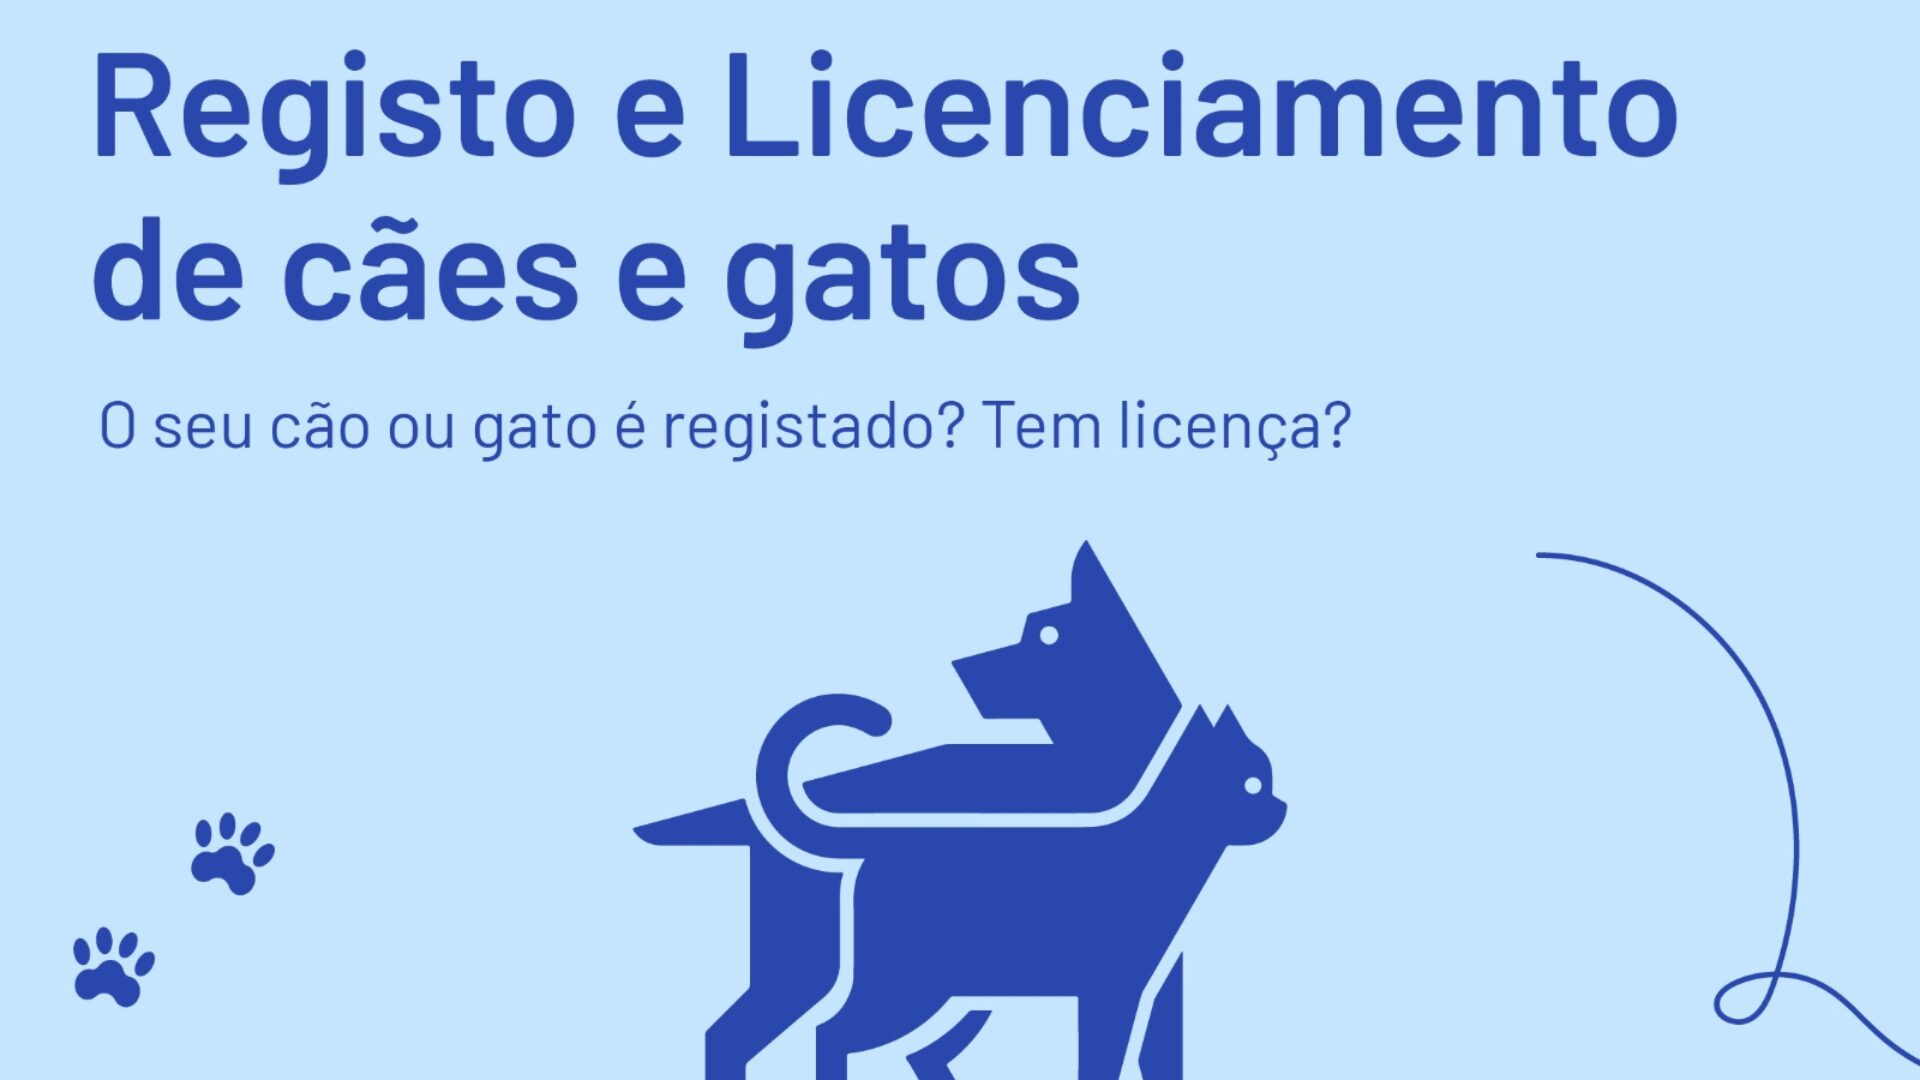 Registo e licenciamento de cães e gatos